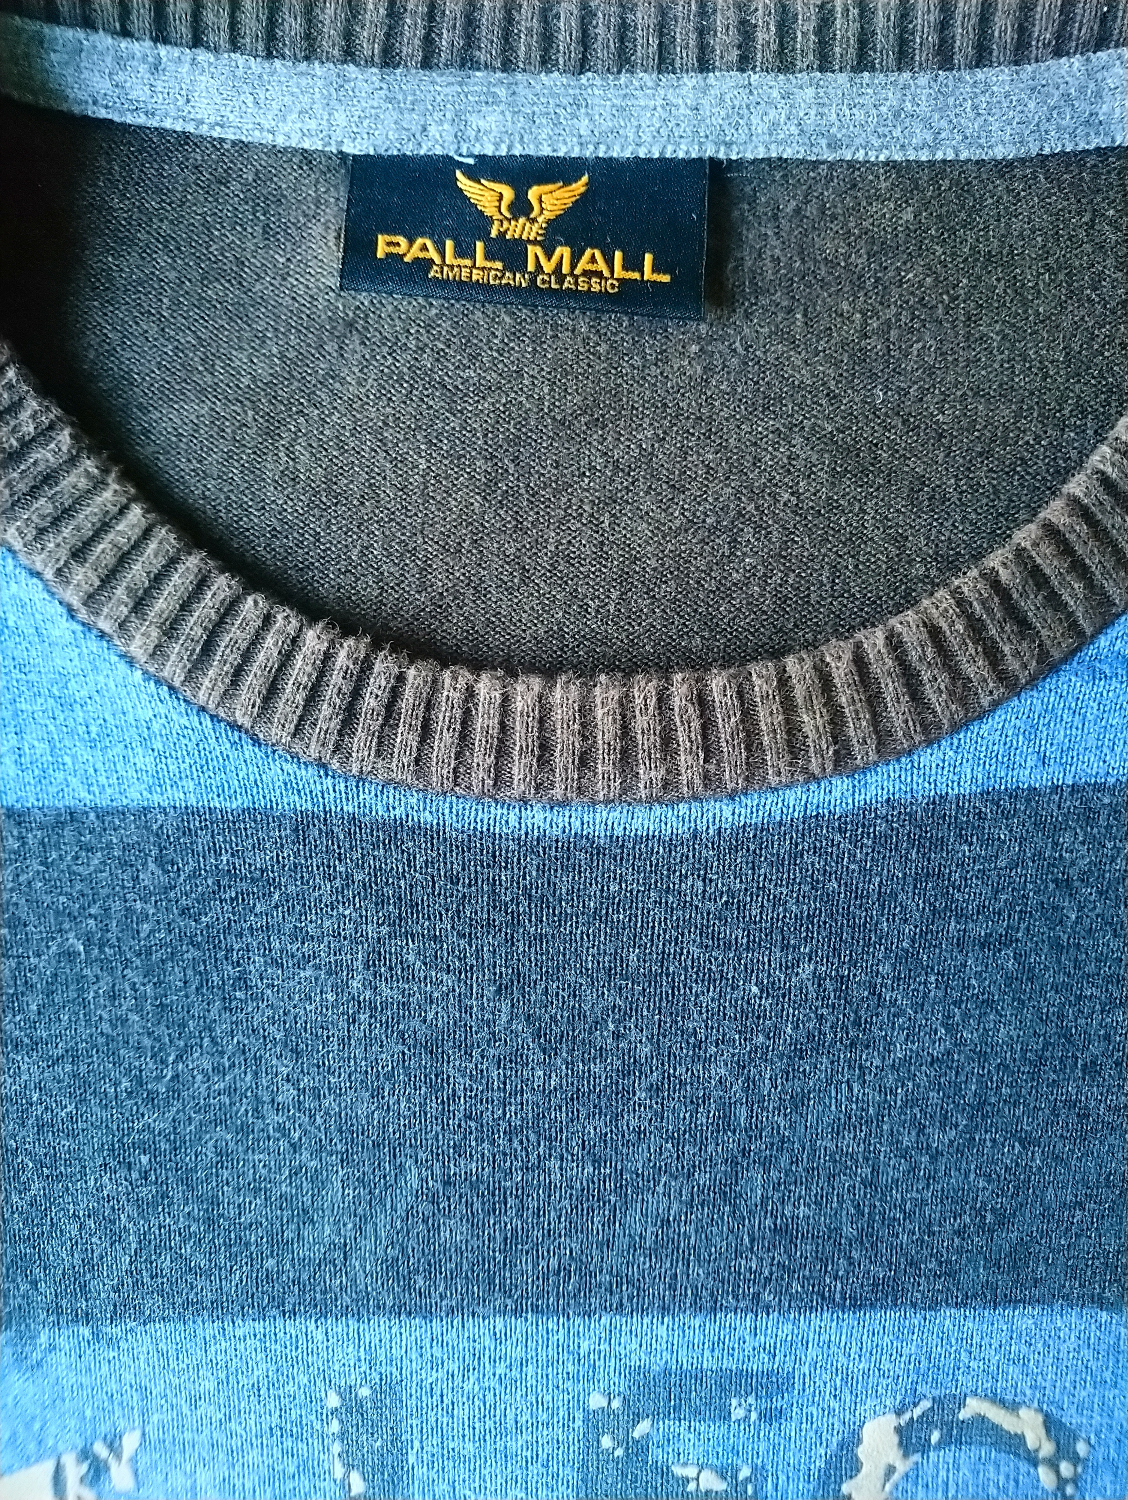 Induceren Edelsteen genetisch Pall Mall / PME Legend trui. Blauw Bruin Grijs. Maat 2XL | EcoGents